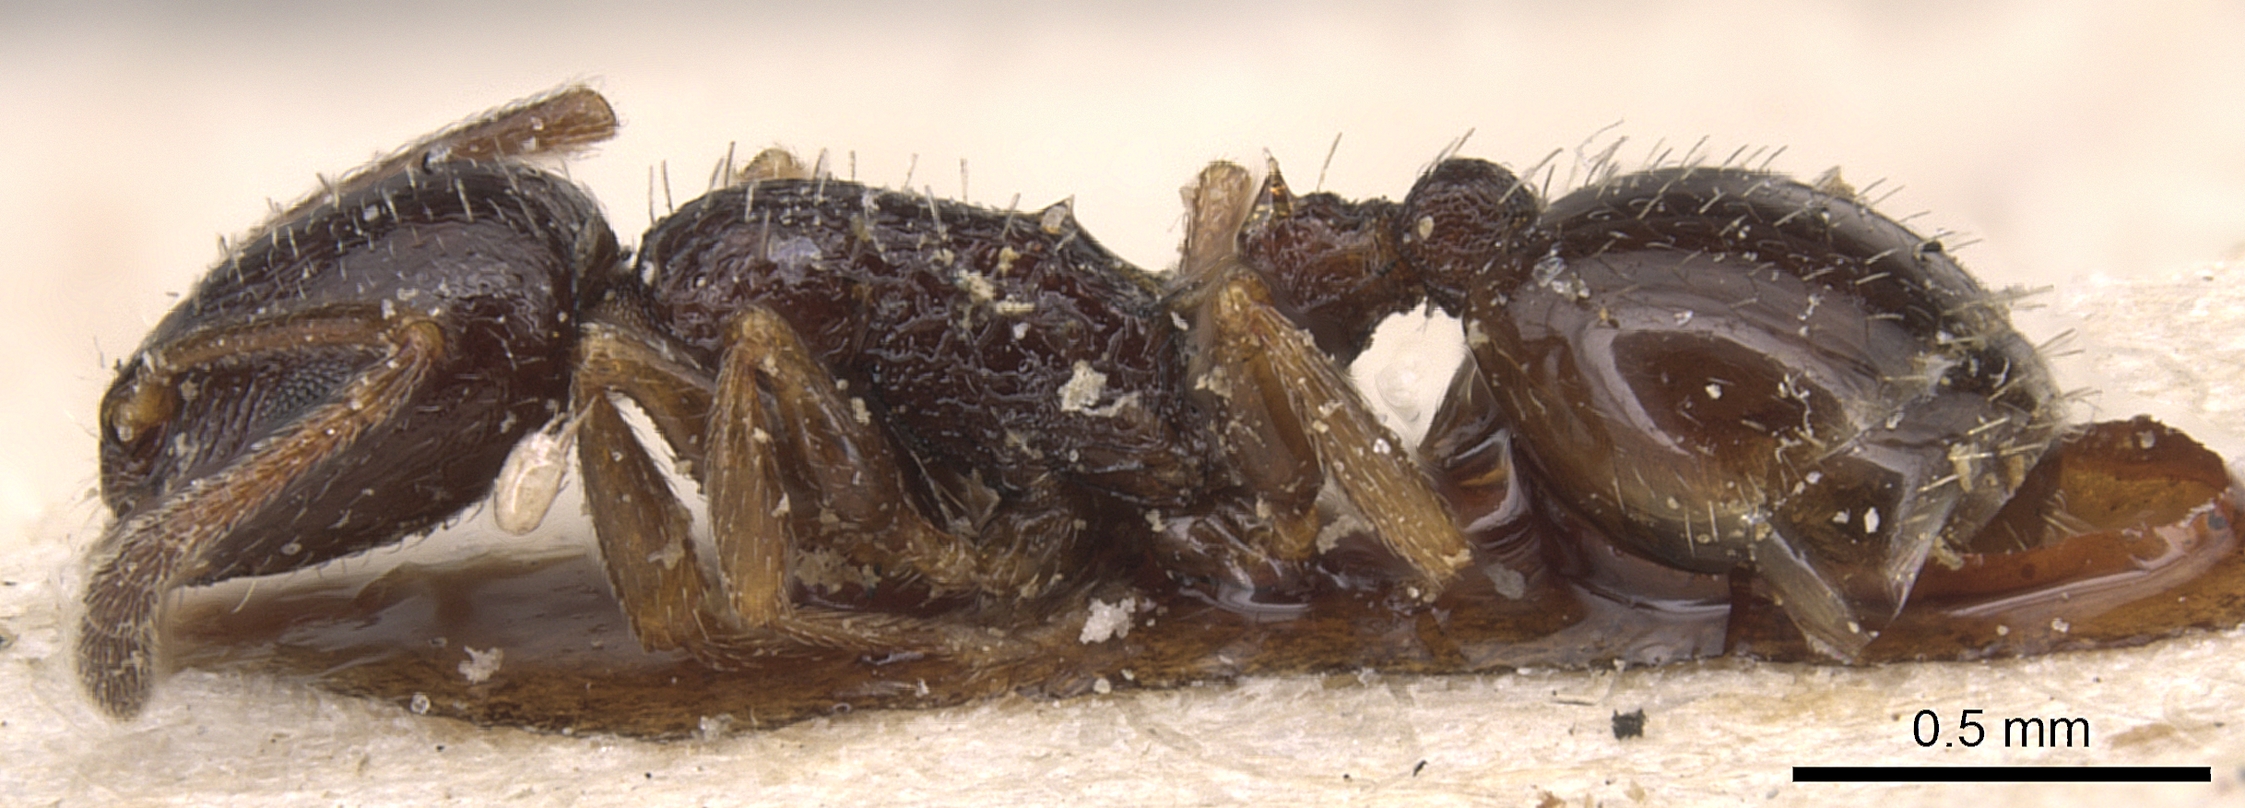 Temnothorax baeticus